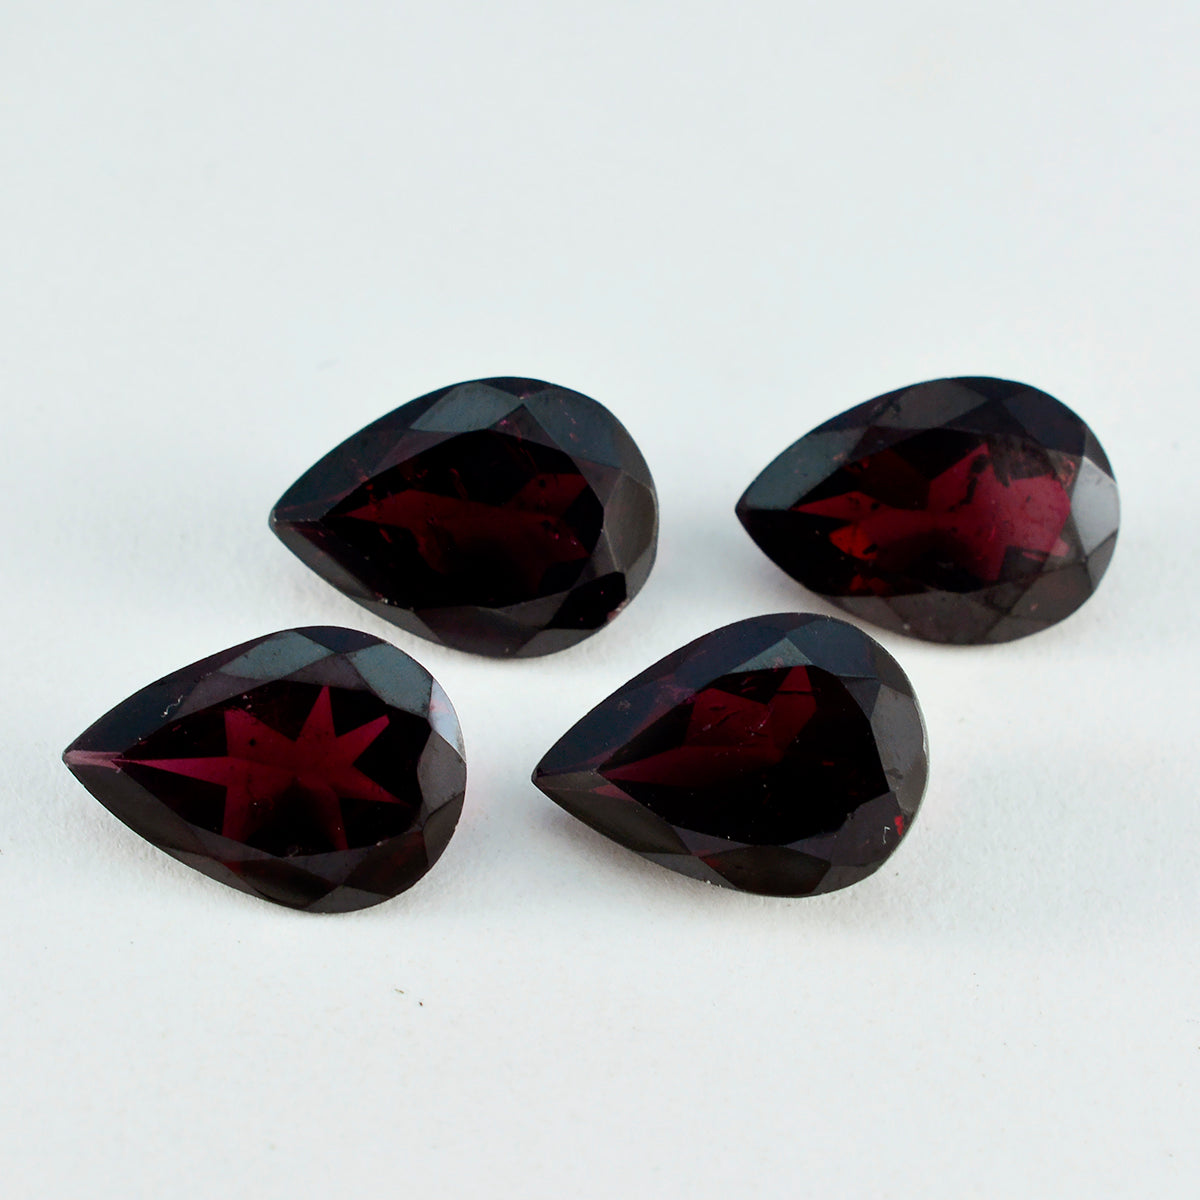 riyogems 1 шт. натуральный красный гранат ограненный 10x14 мм грушевидная форма отличное качество свободный драгоценный камень